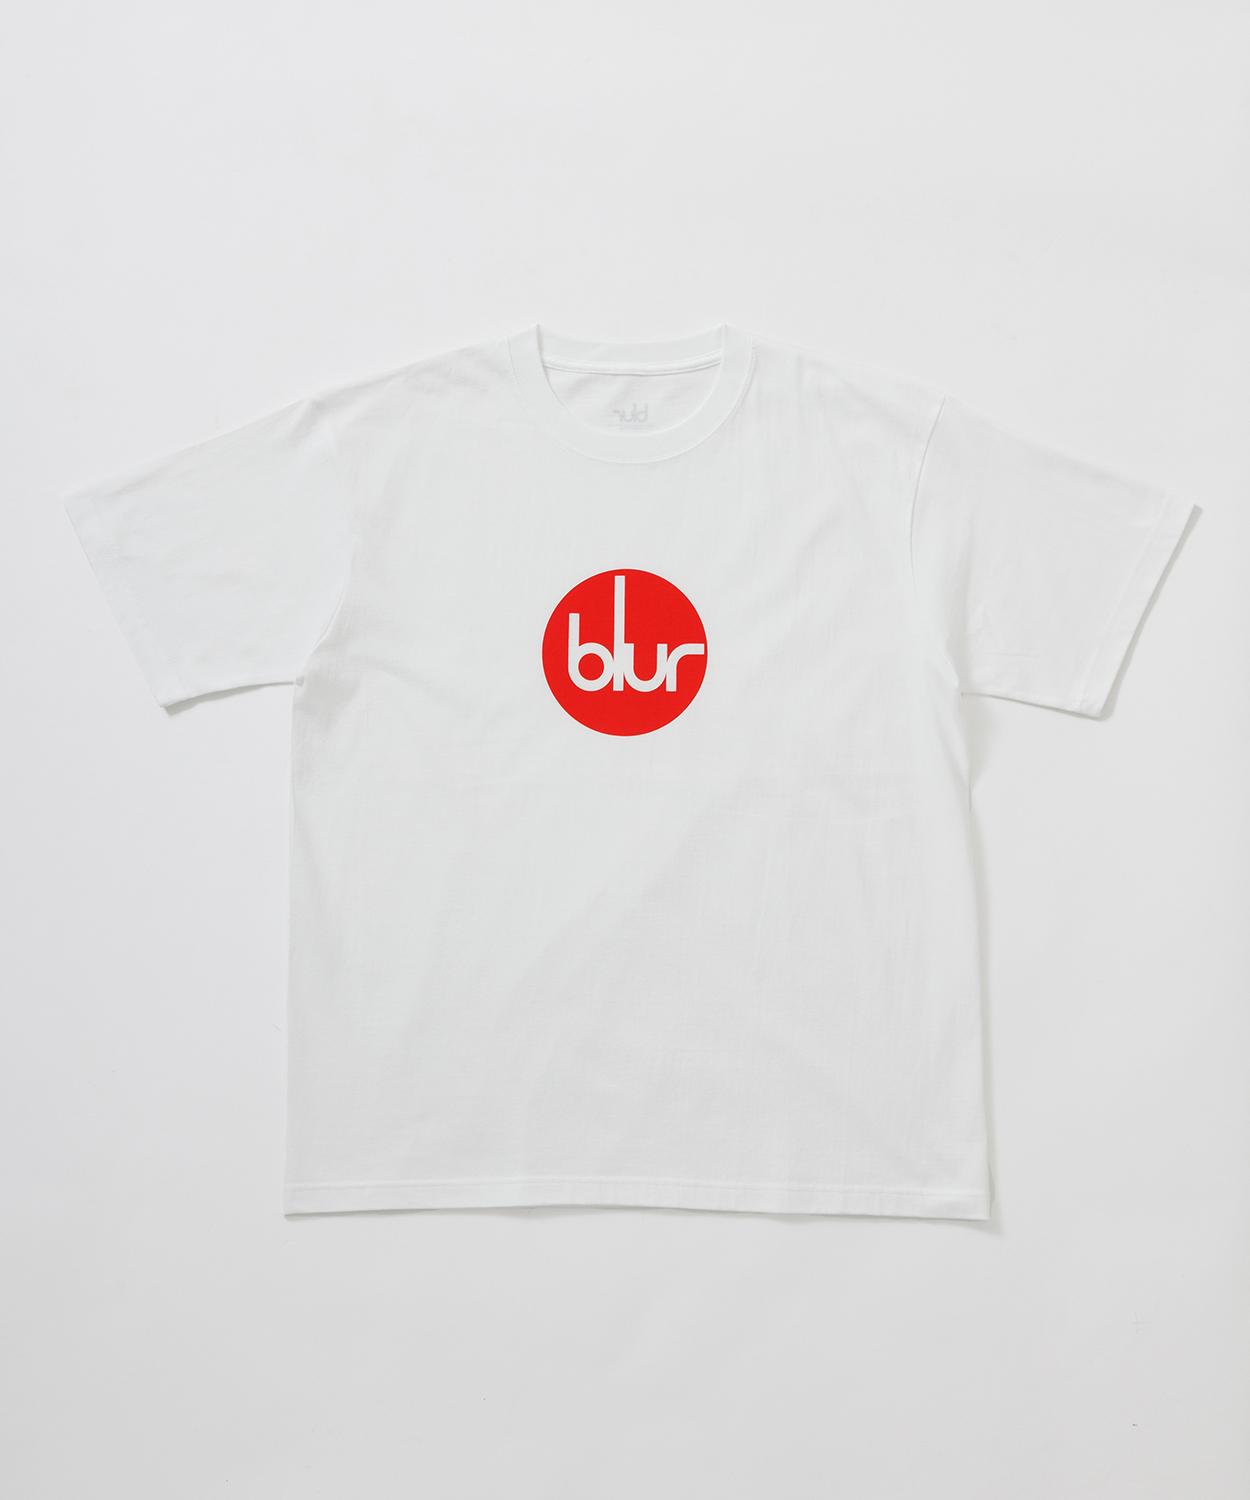 ロックバンド「Blur」の6種類のTシャツが発売！ - Slide:9